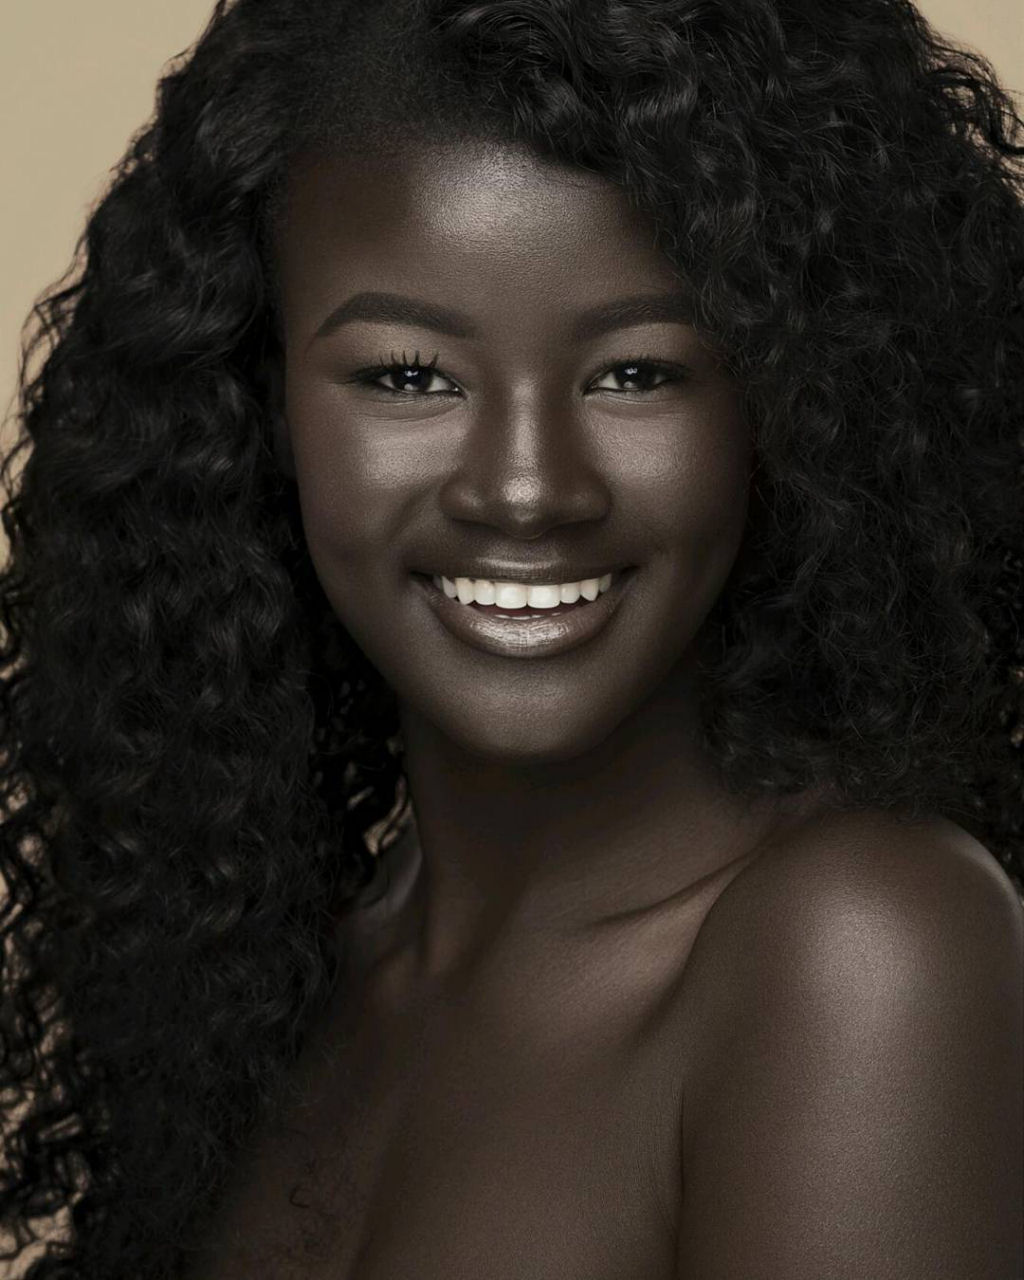 “Deusa da Melanina” senegalesa conquista a Internet com o seu tom de pele incrivelmente escuro 04